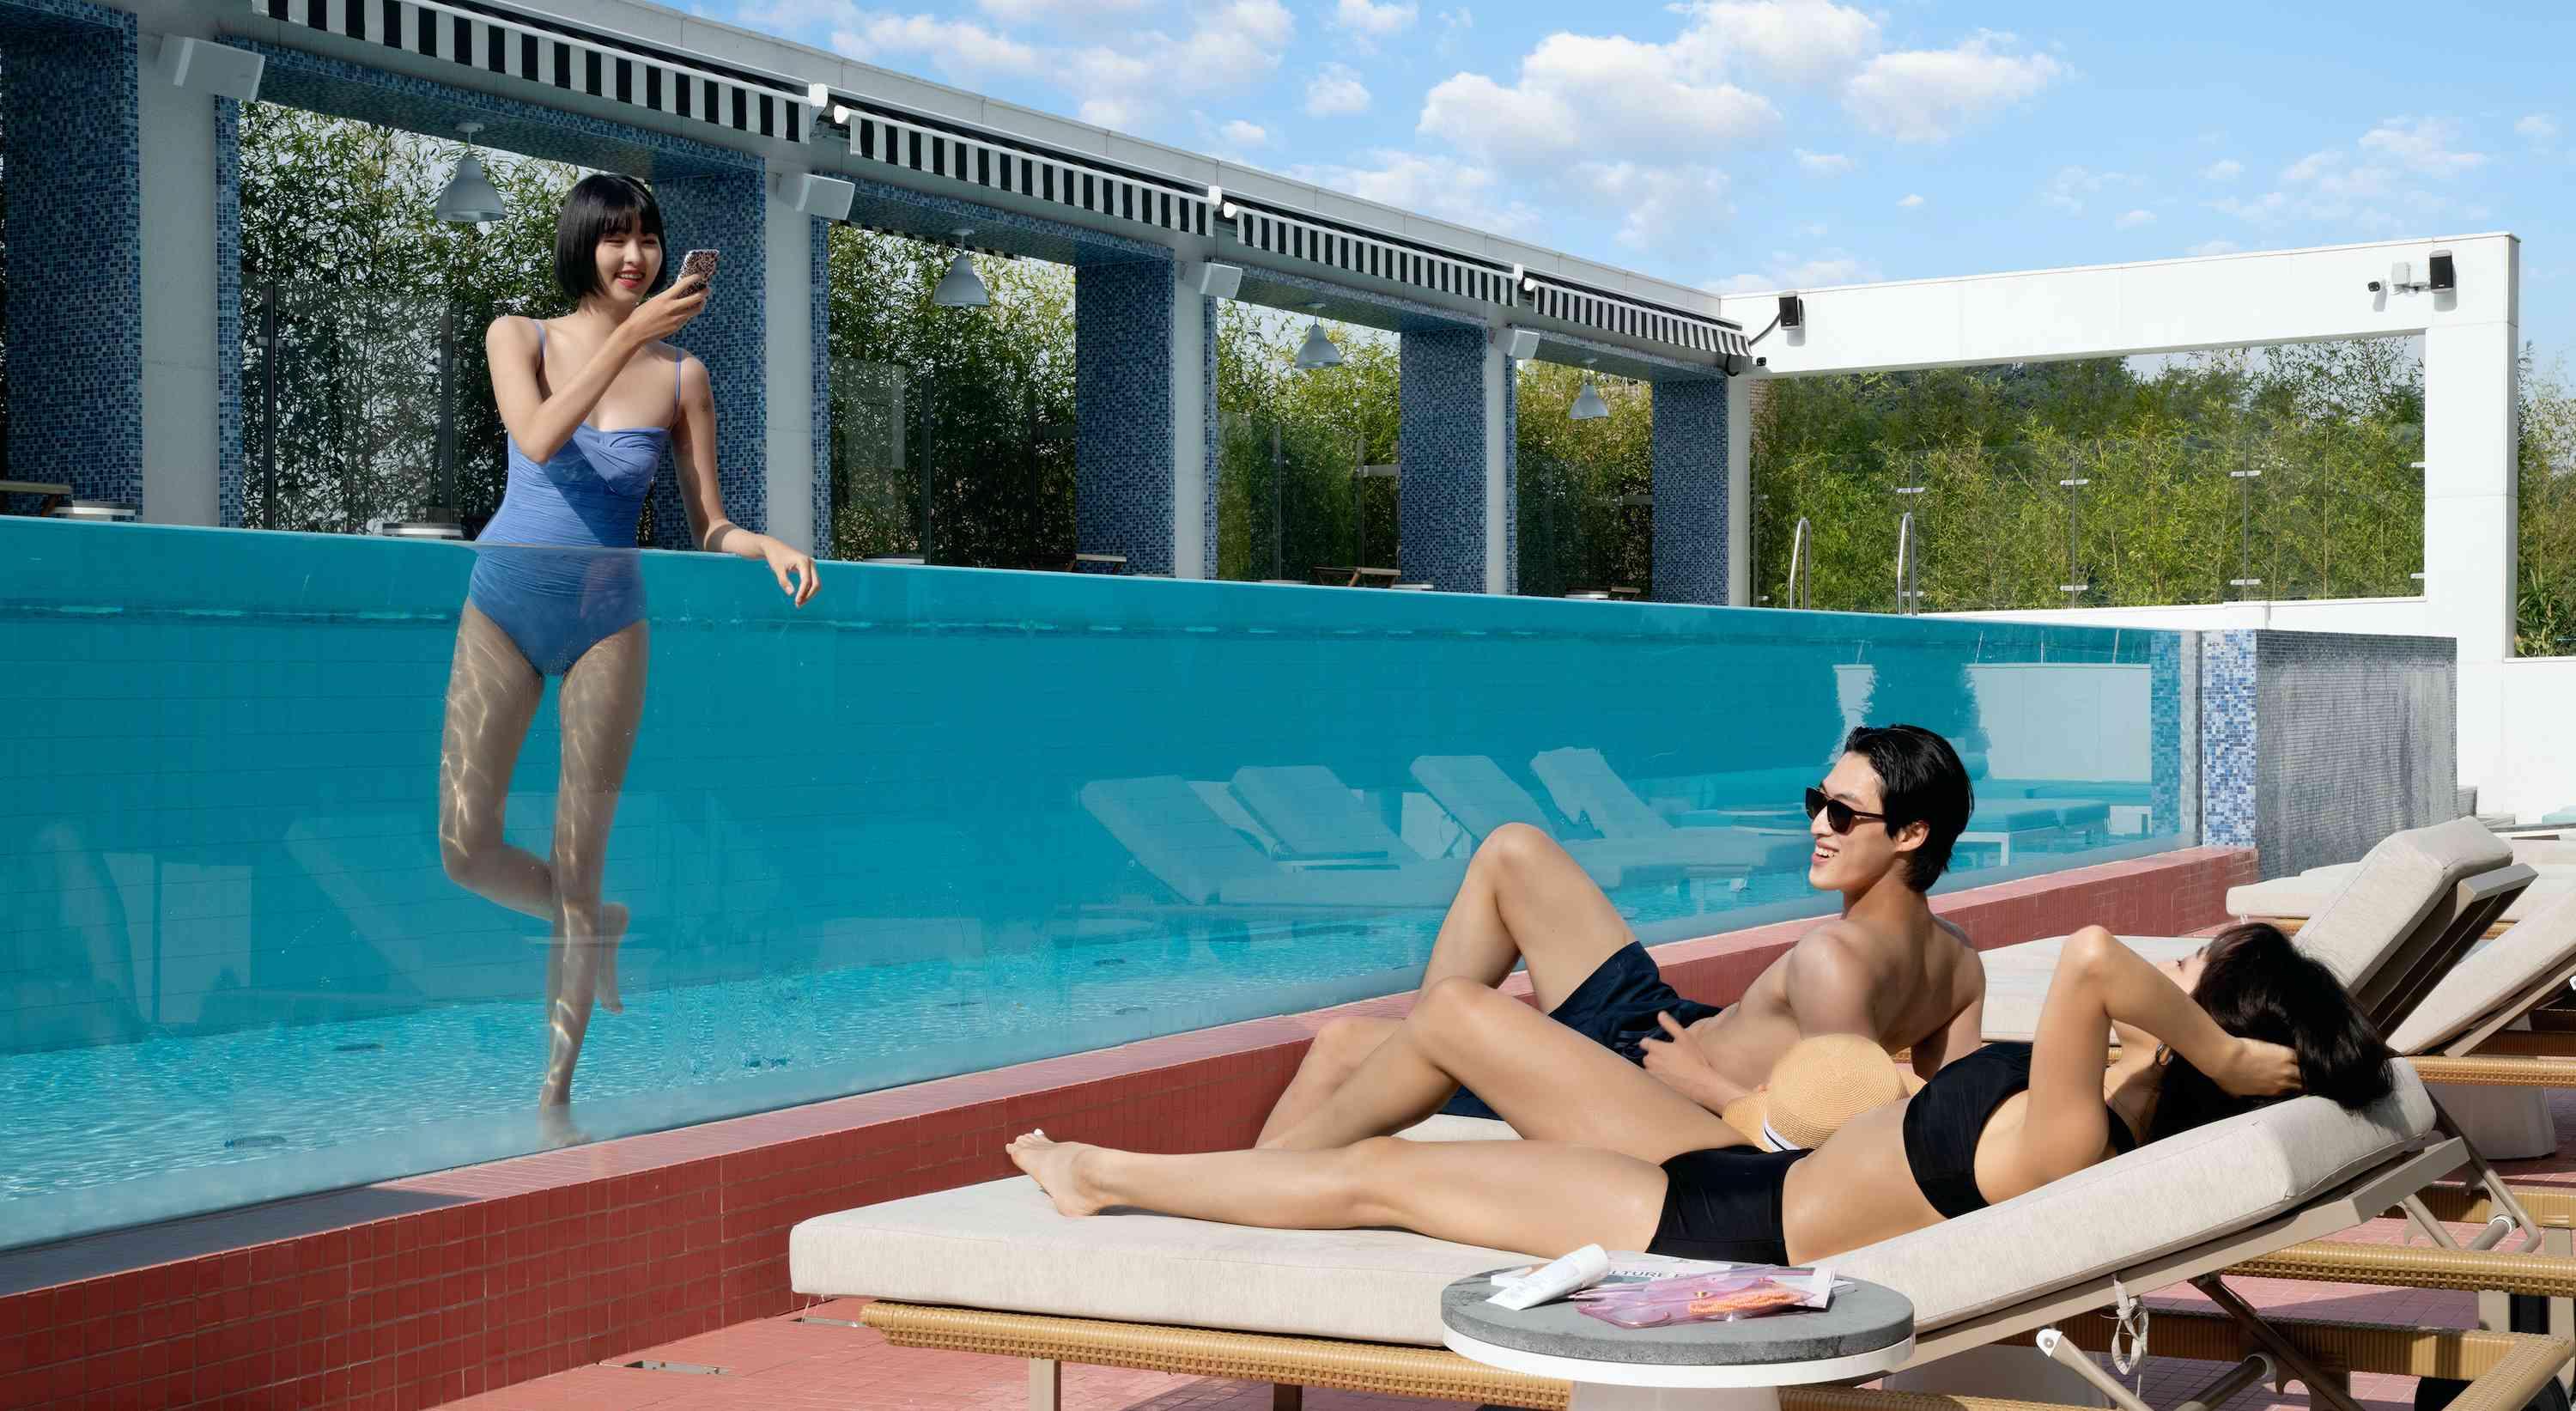 pareja en tumbonas junto a una piscina con un amigo en la piscina